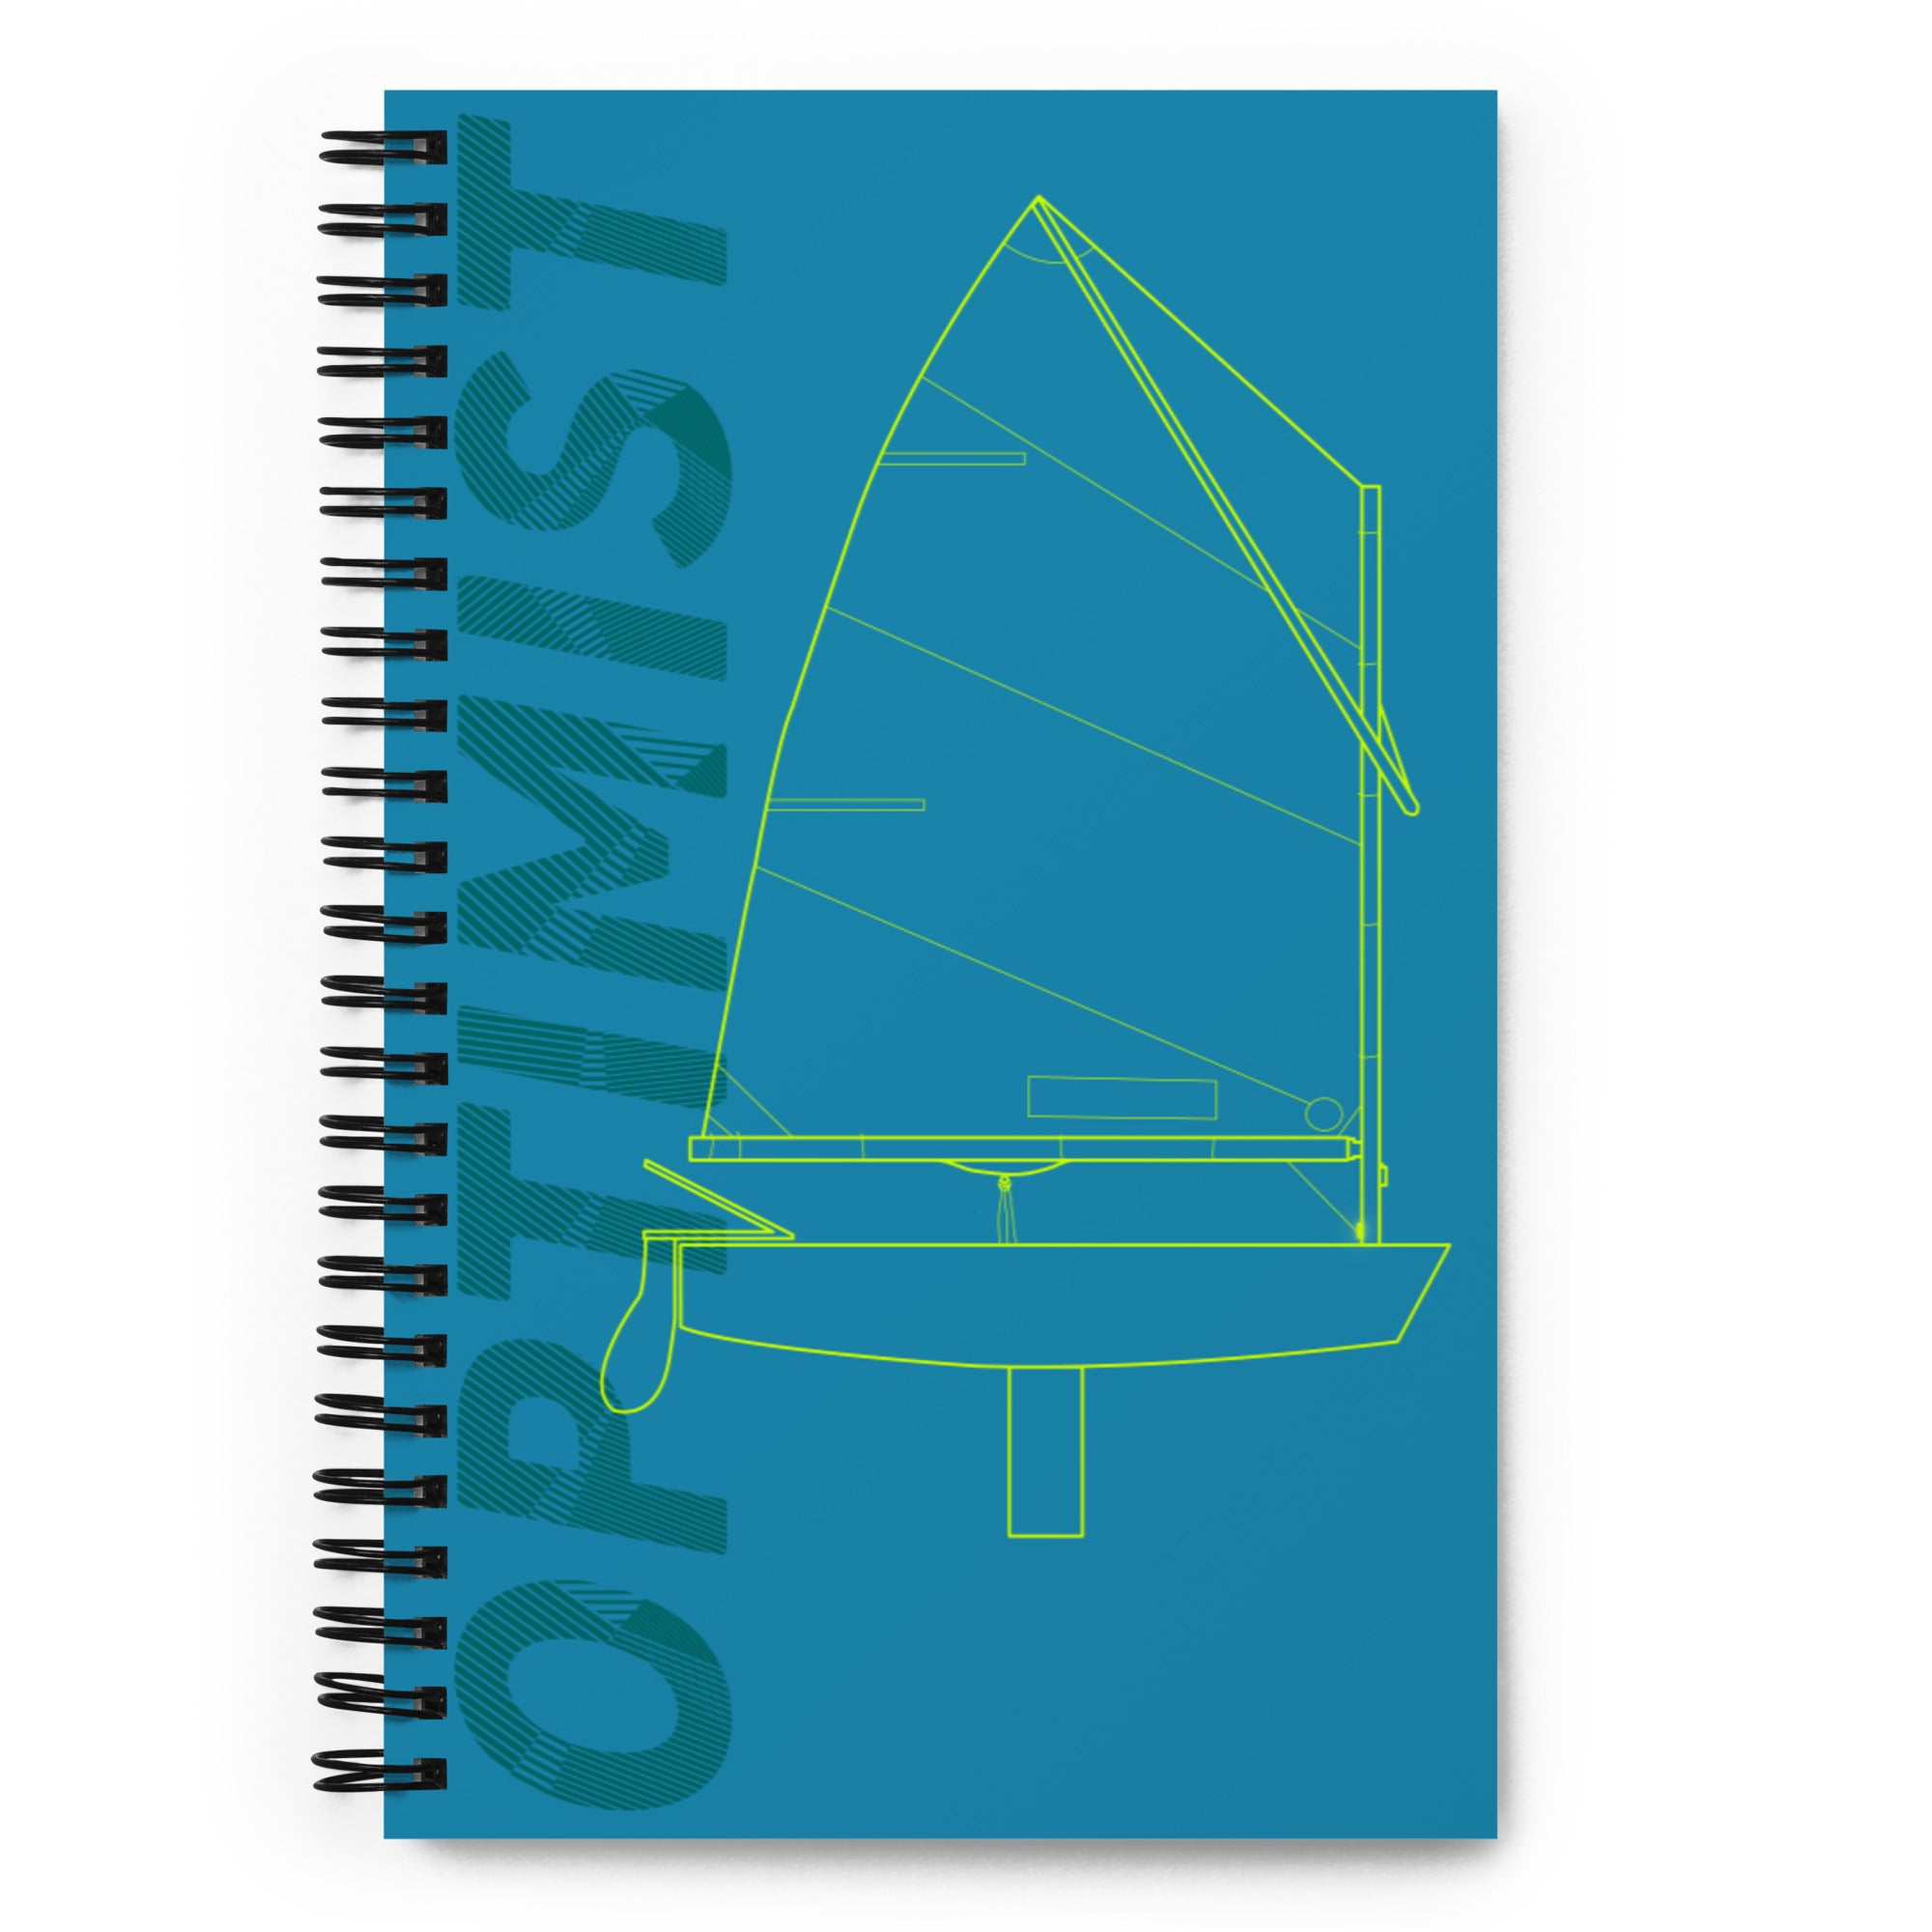 Optimist Spiral notebook